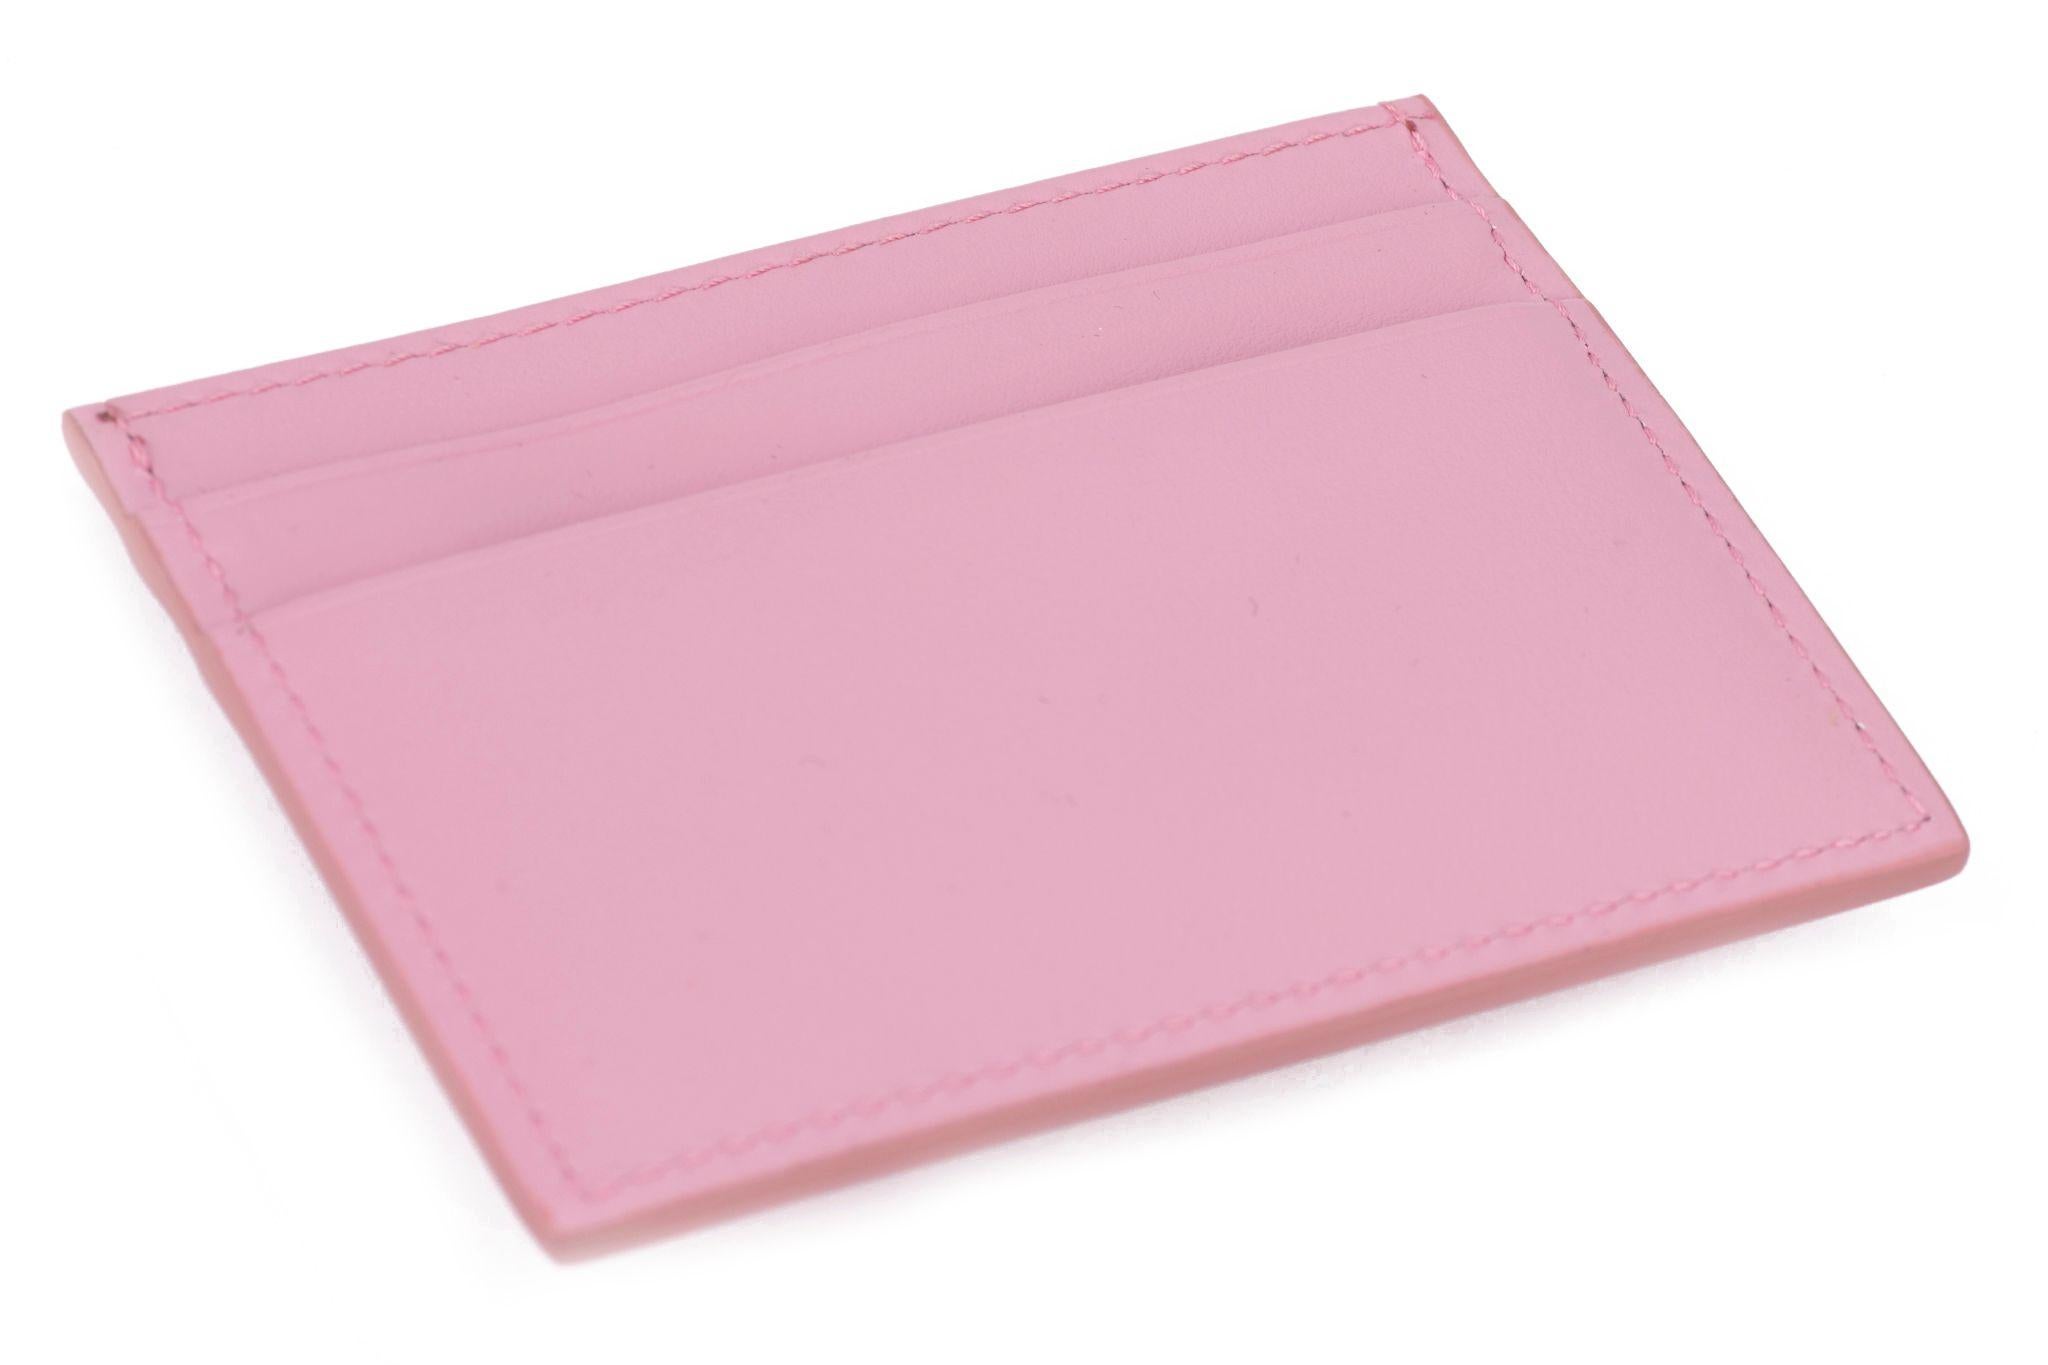 Dolce & Gabbana brandneue Baby rosa Kalbsleder Kreditkarte Brieftasche mit multicolor Strass Logo .
Mit Booklet, Anhänger, Echtheitsprüfung  Karte, Original-Schutzumschlag und Originalverpackung.